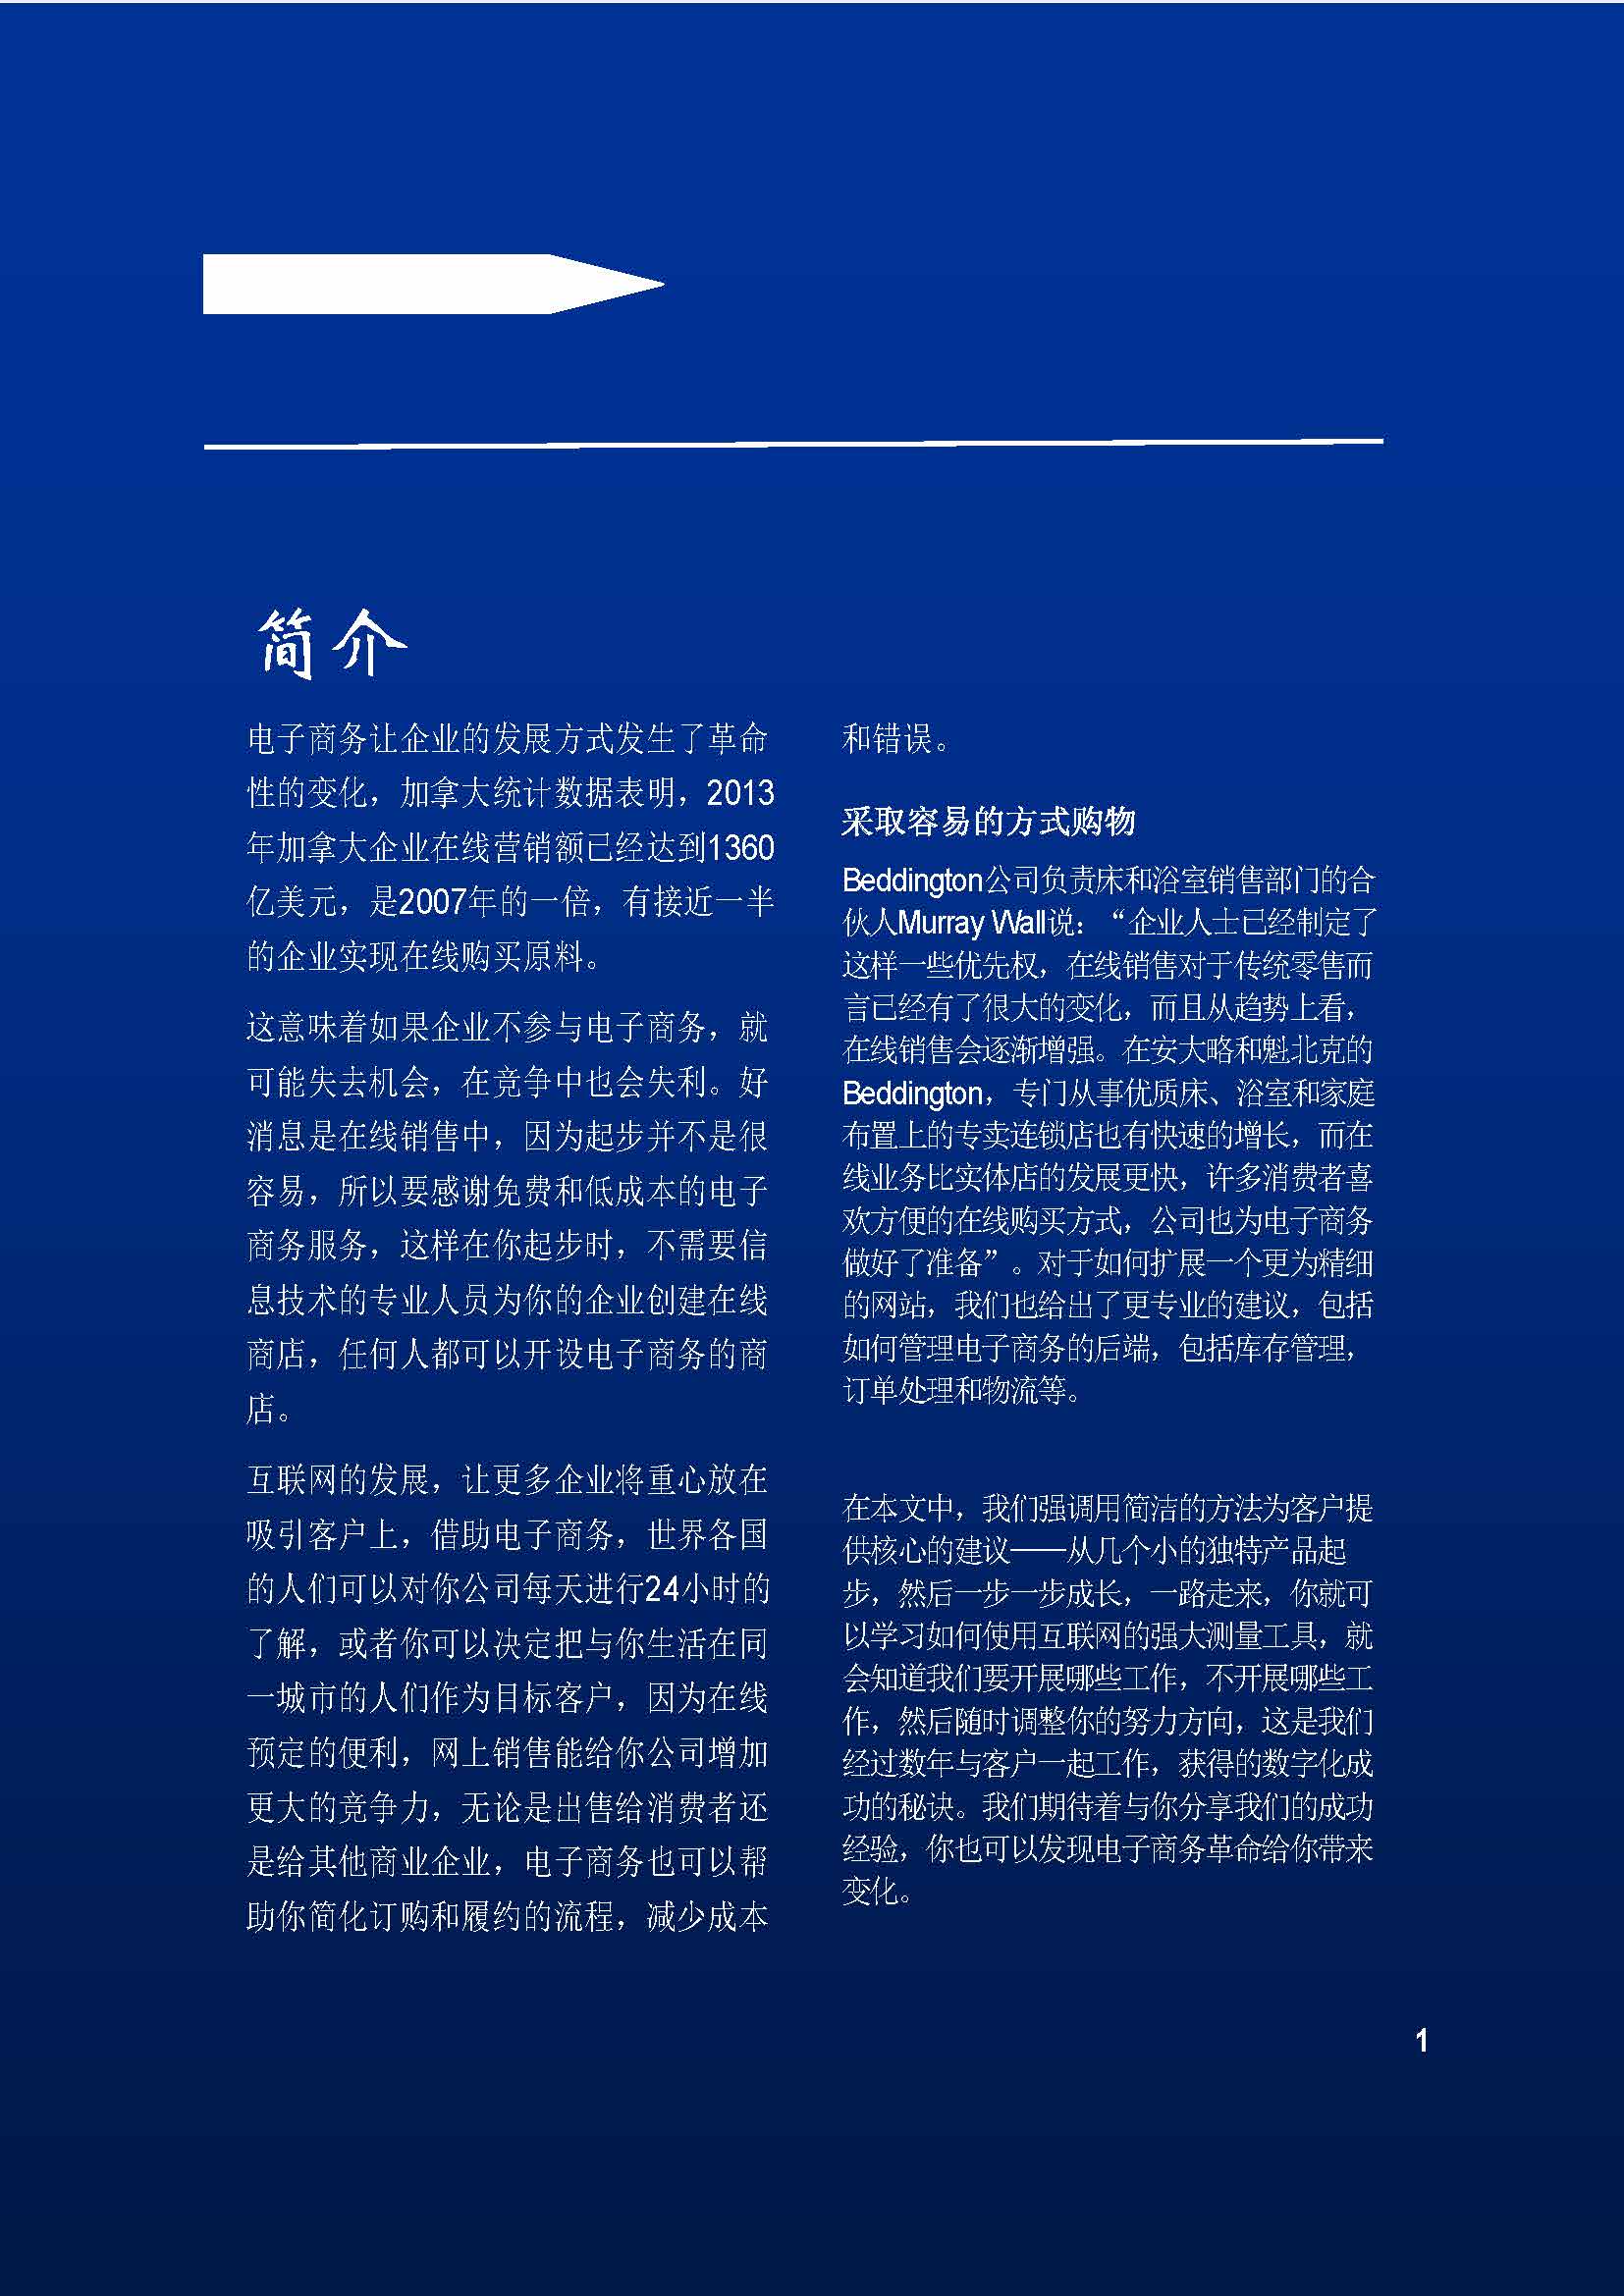 中国科技咨询协会国际快讯（第二十五期)_页面_04.jpg